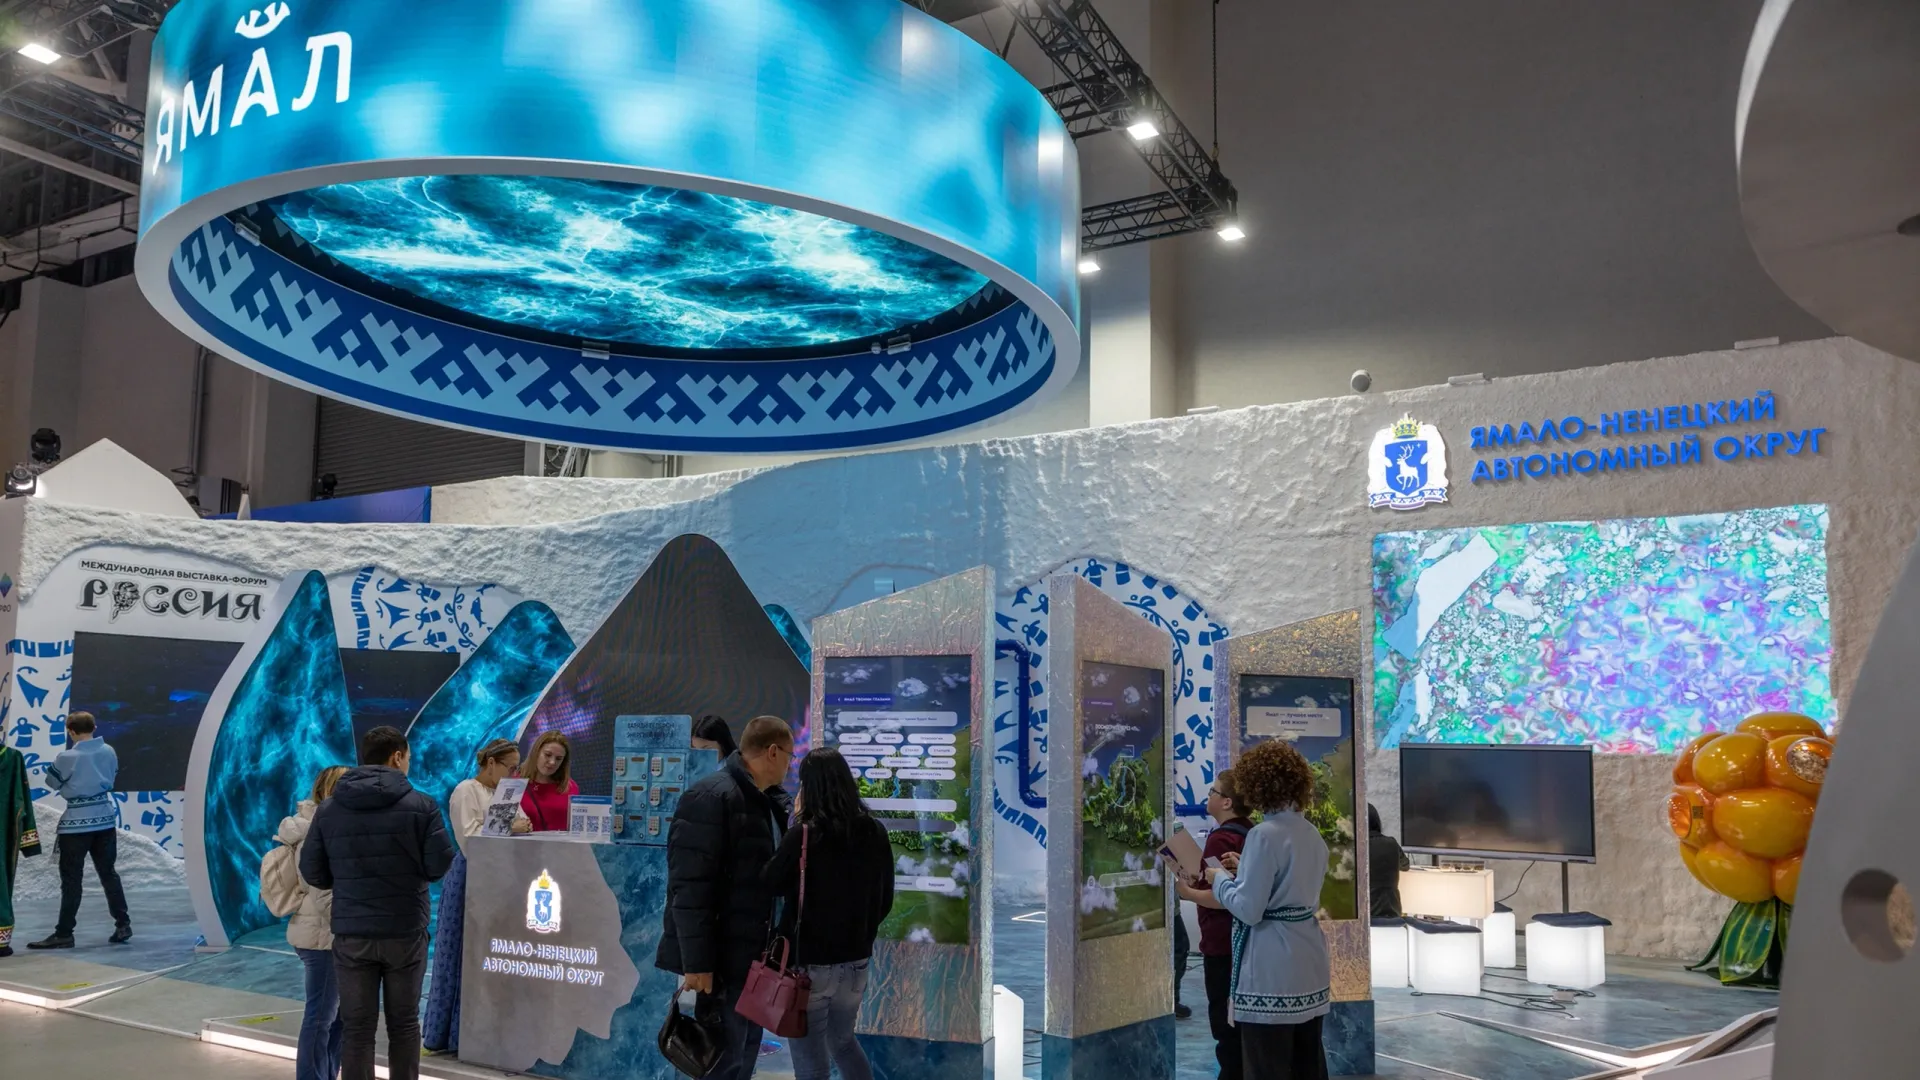 Ямальский стенд на выставке "Россия" пользуется огромной популярностью у посетителей. Фото: Фёдор Воронов / "Ямал-Медиа"